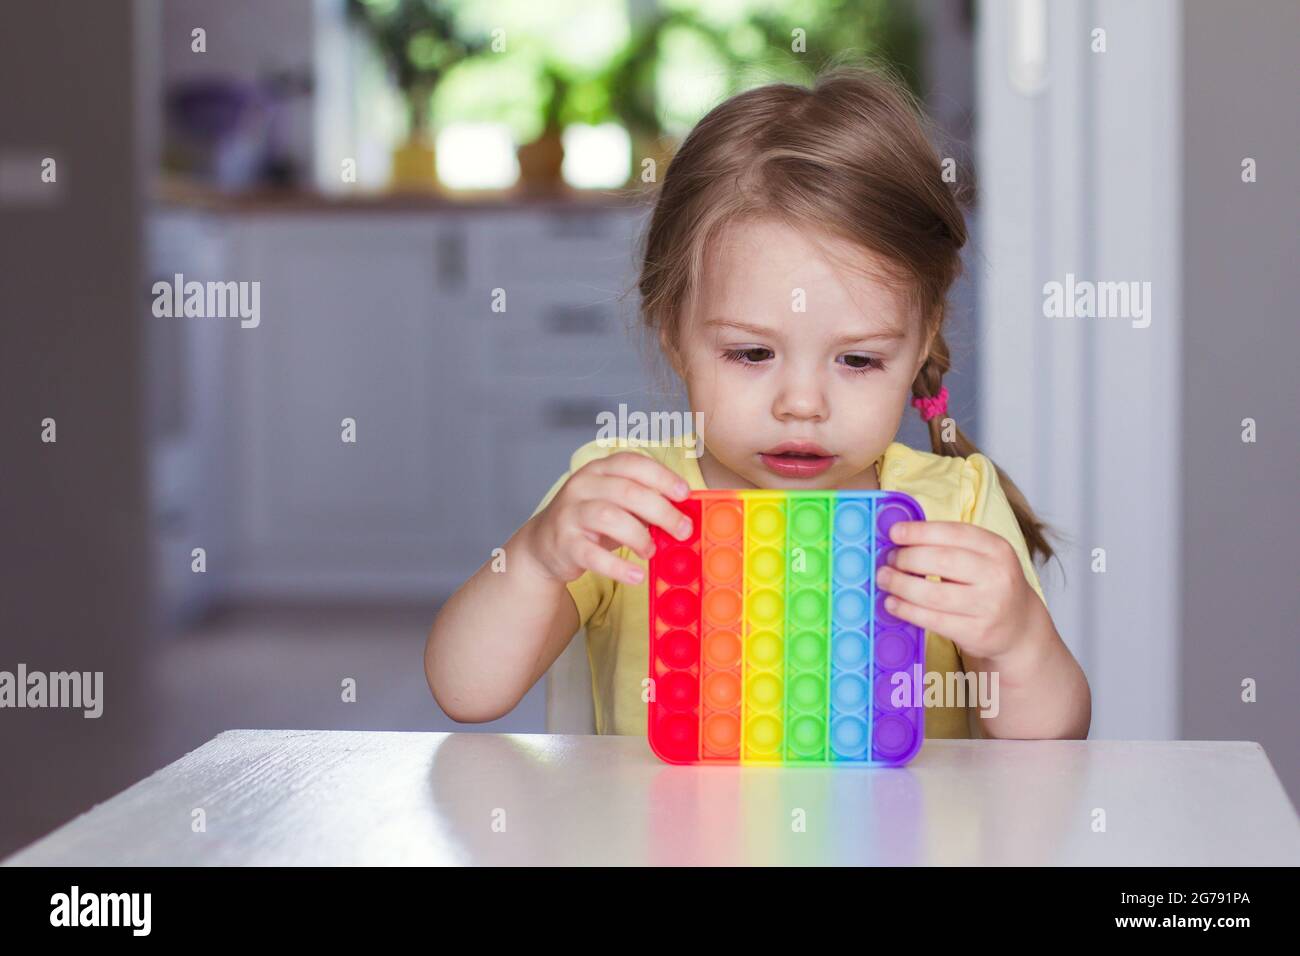 Kleine blonde Mädchen Kinder spielen mit neuen Trend sensorische Spielzeug Regenbogen Pop it. Antistress-Spielzeug für Kinder und Erwachsene.farbenfrohes Spielzeug einfache Grübchen. Verschmickt Stockfoto